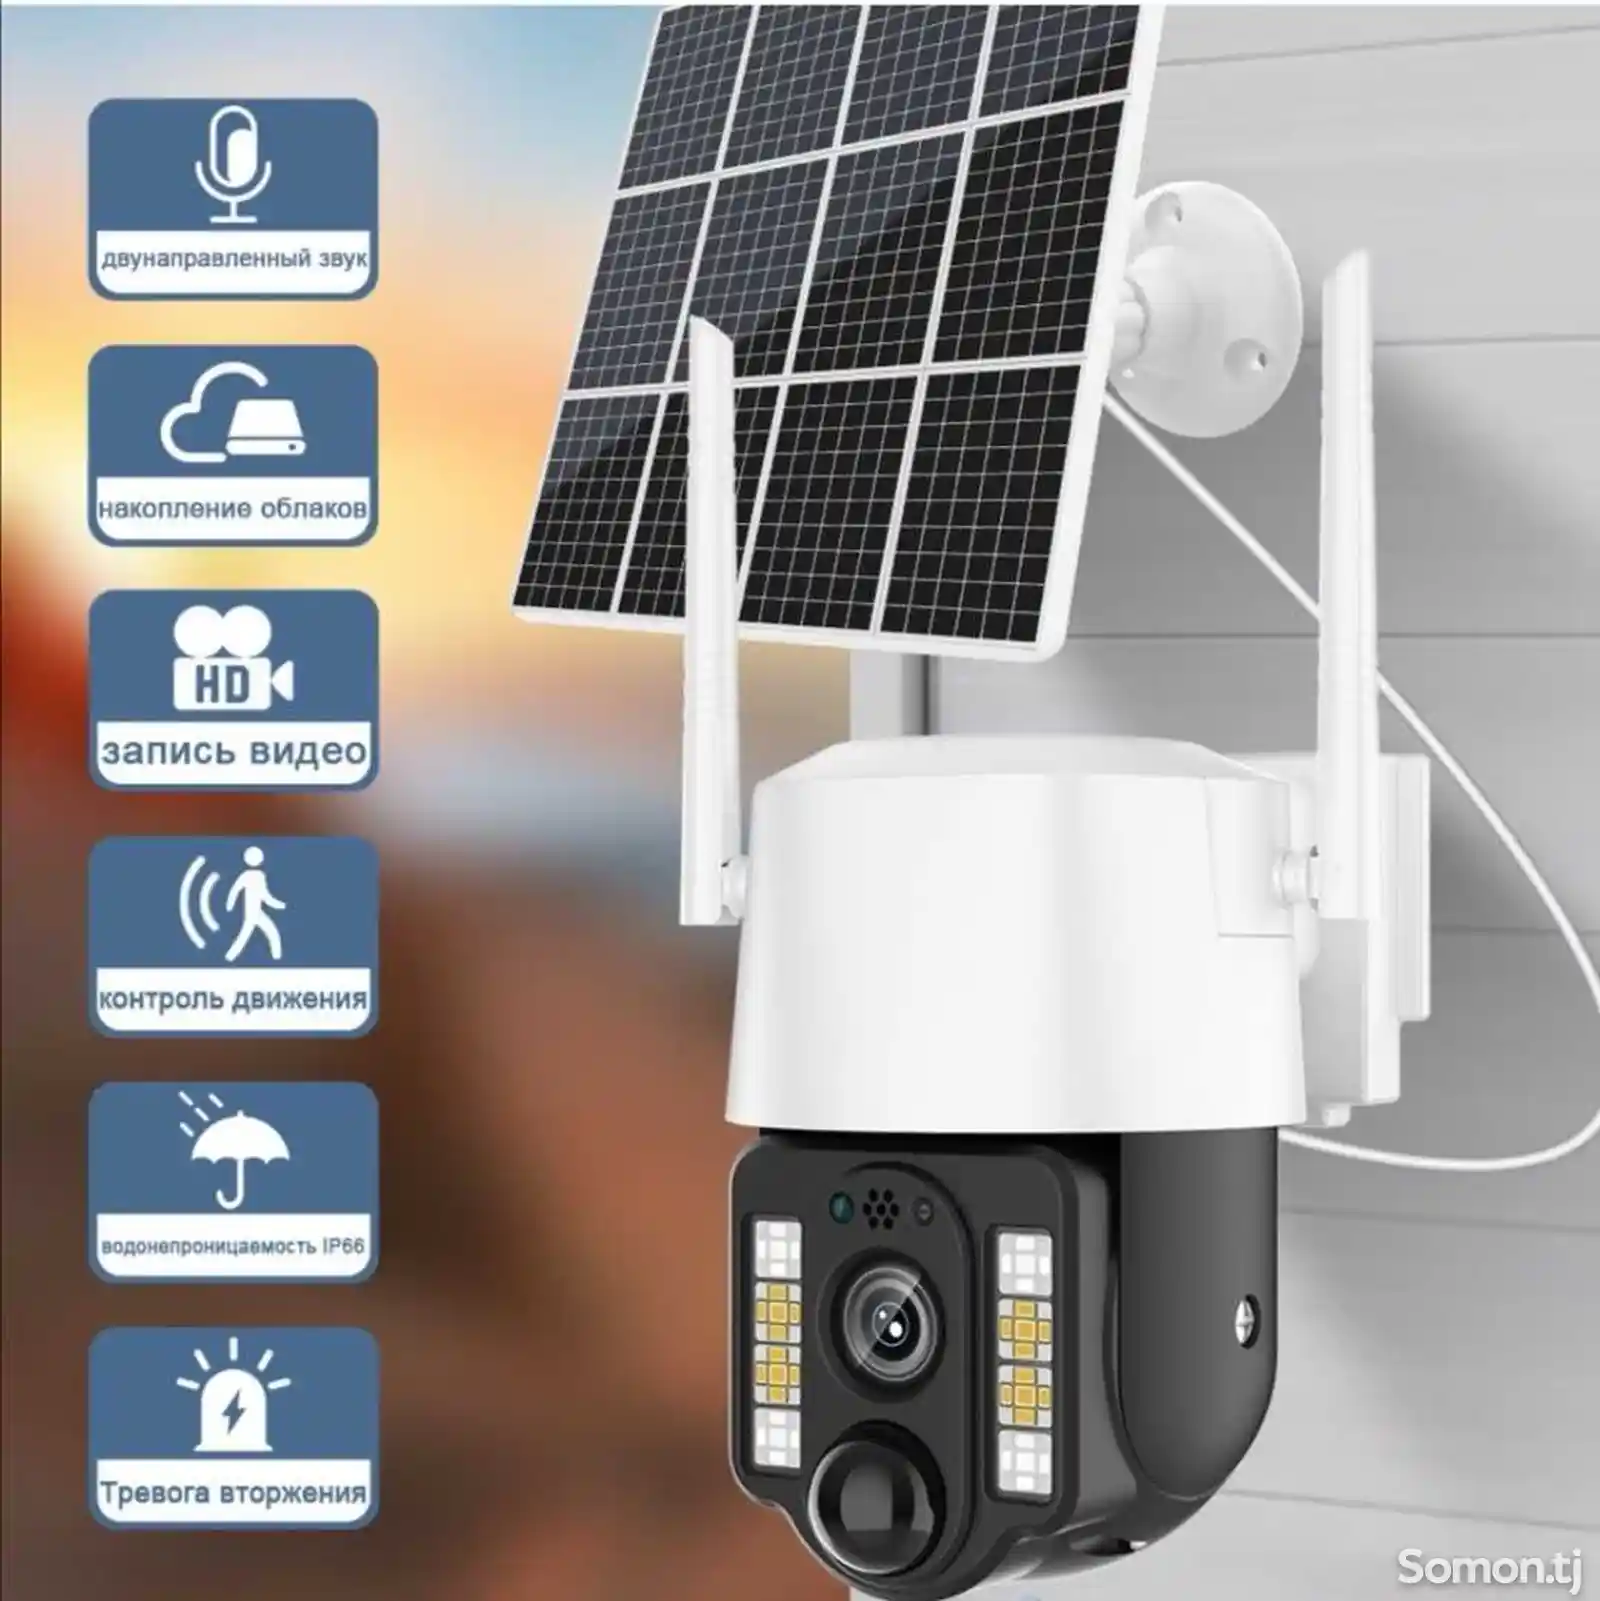 Солнечная камера 5Мп сим-карта 4G-3